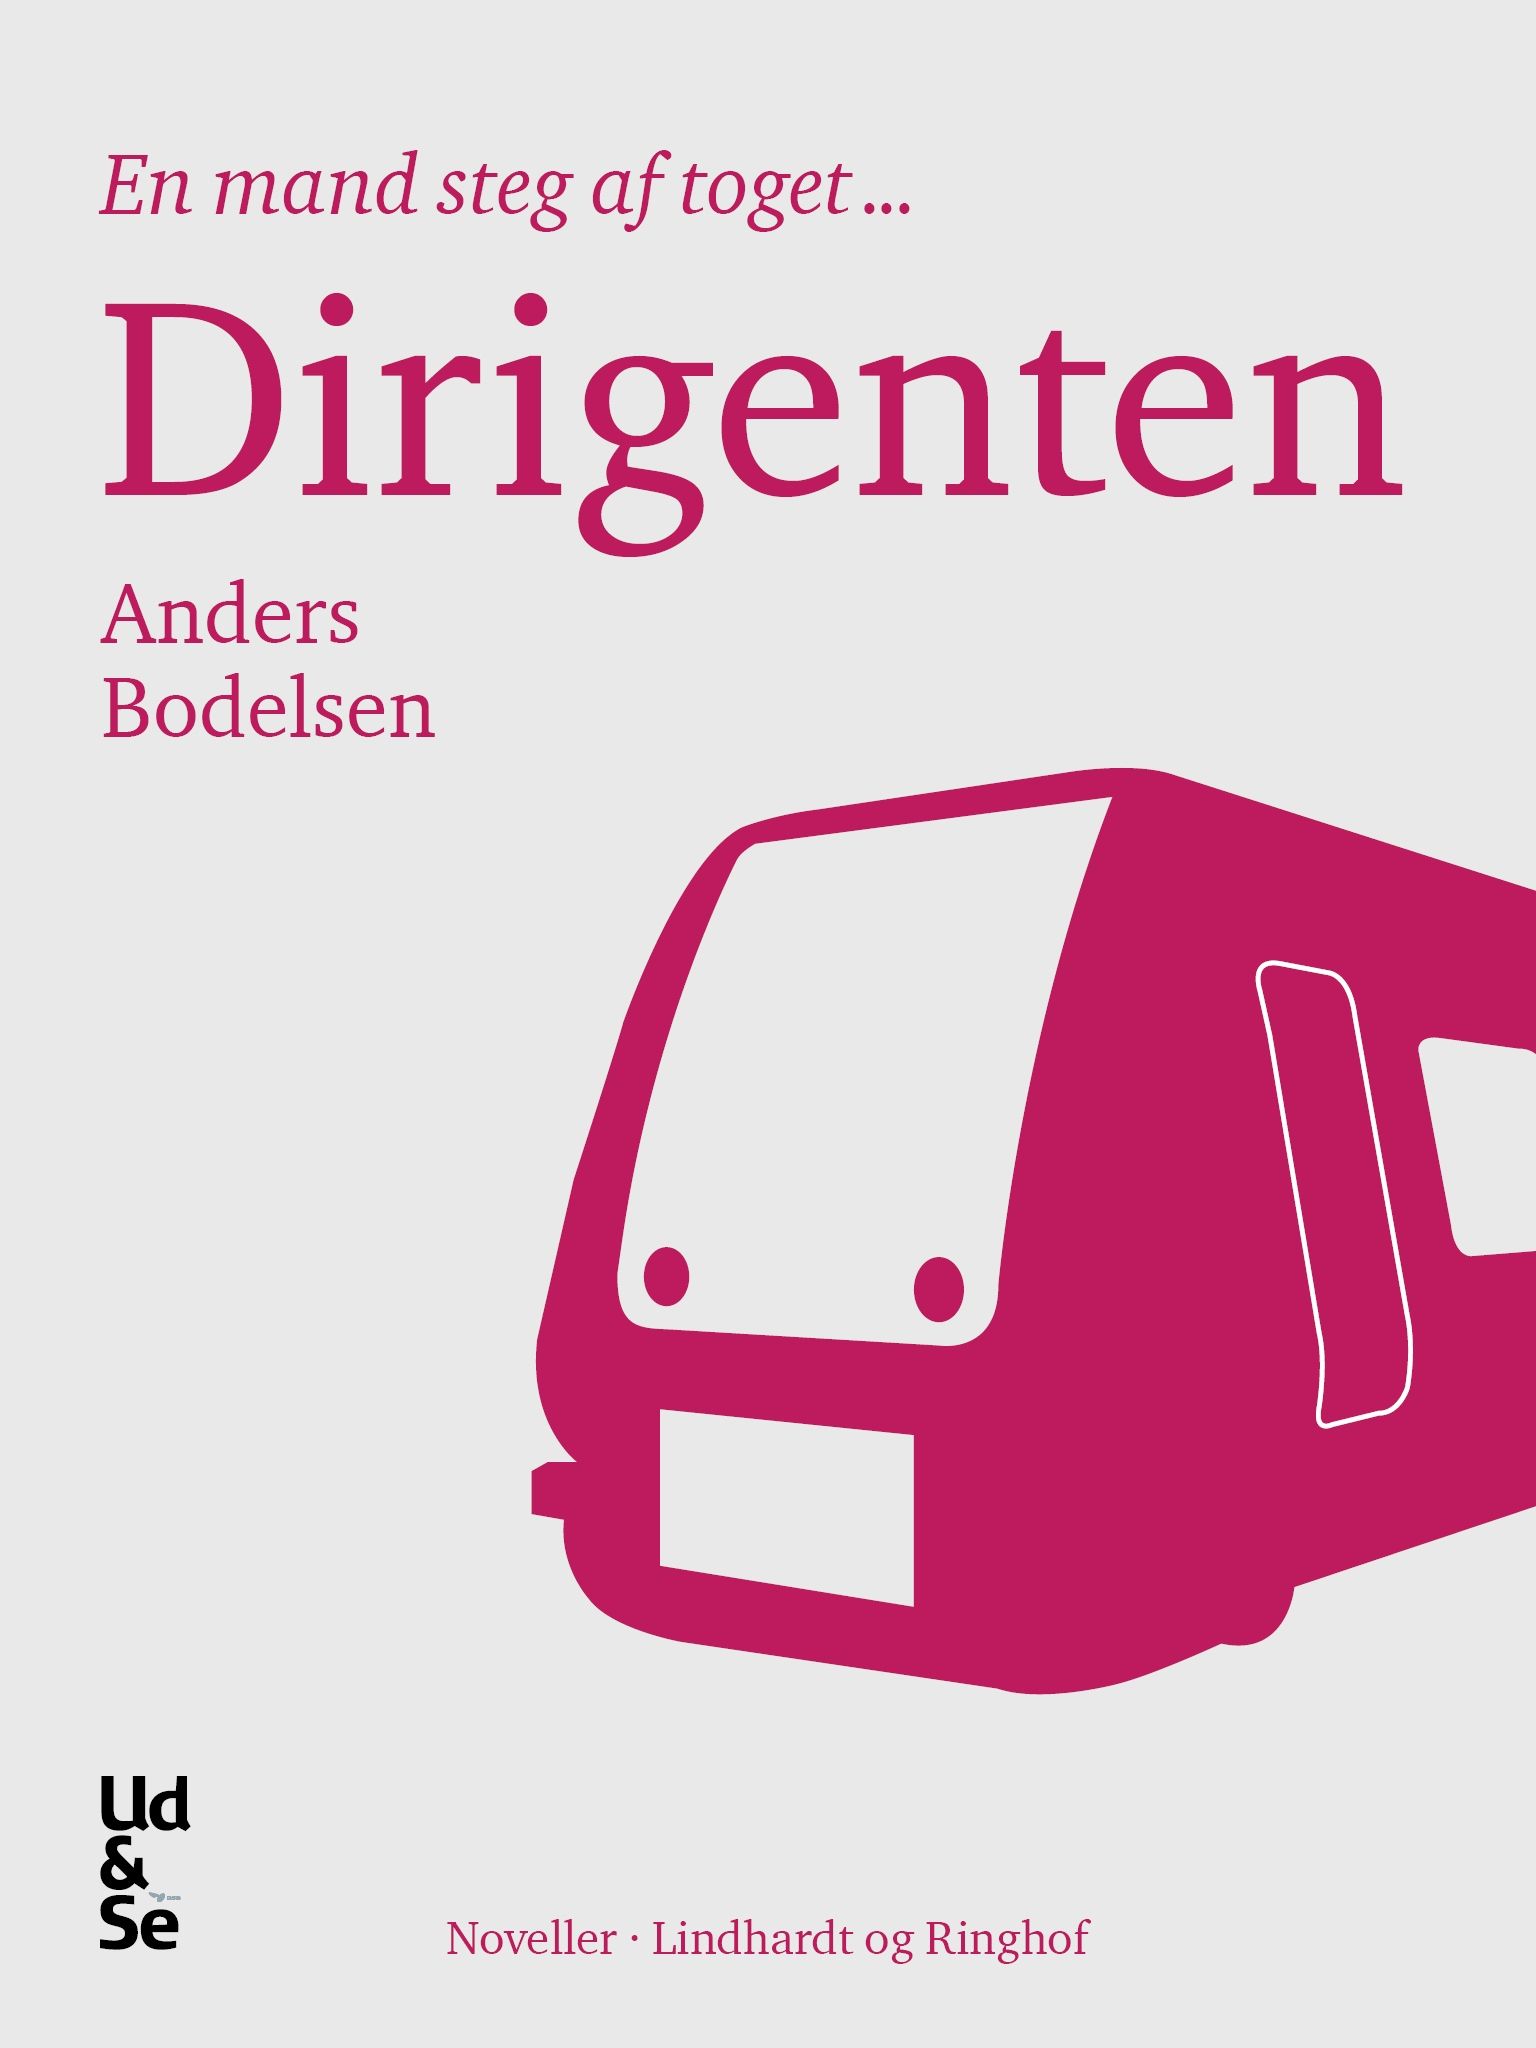 Dirigenten, eBook by Anders Bodelsen